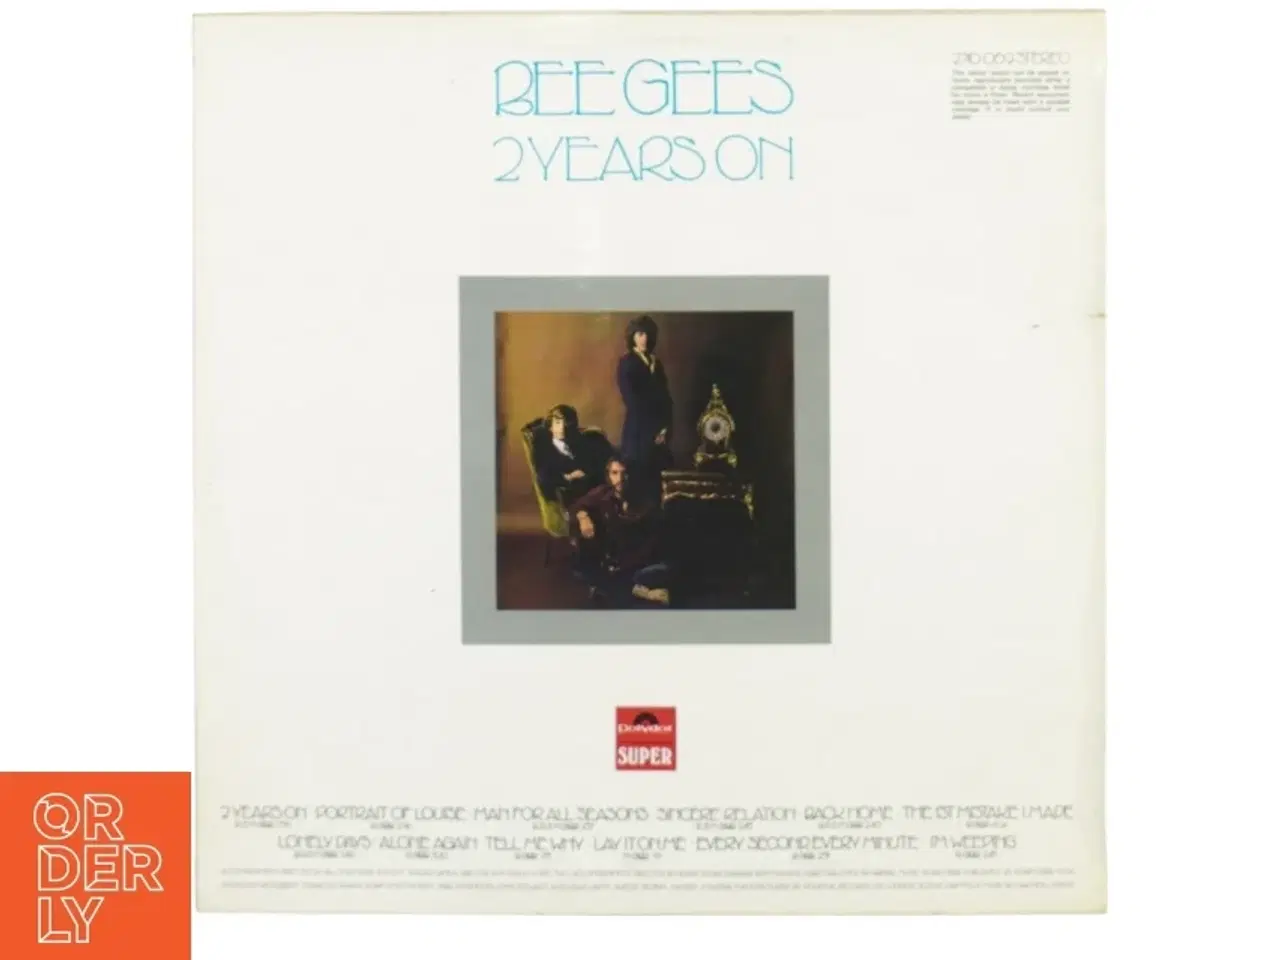 Billede 2 - Bee gees, 2 years on fra Polydor (str. 30 cm)